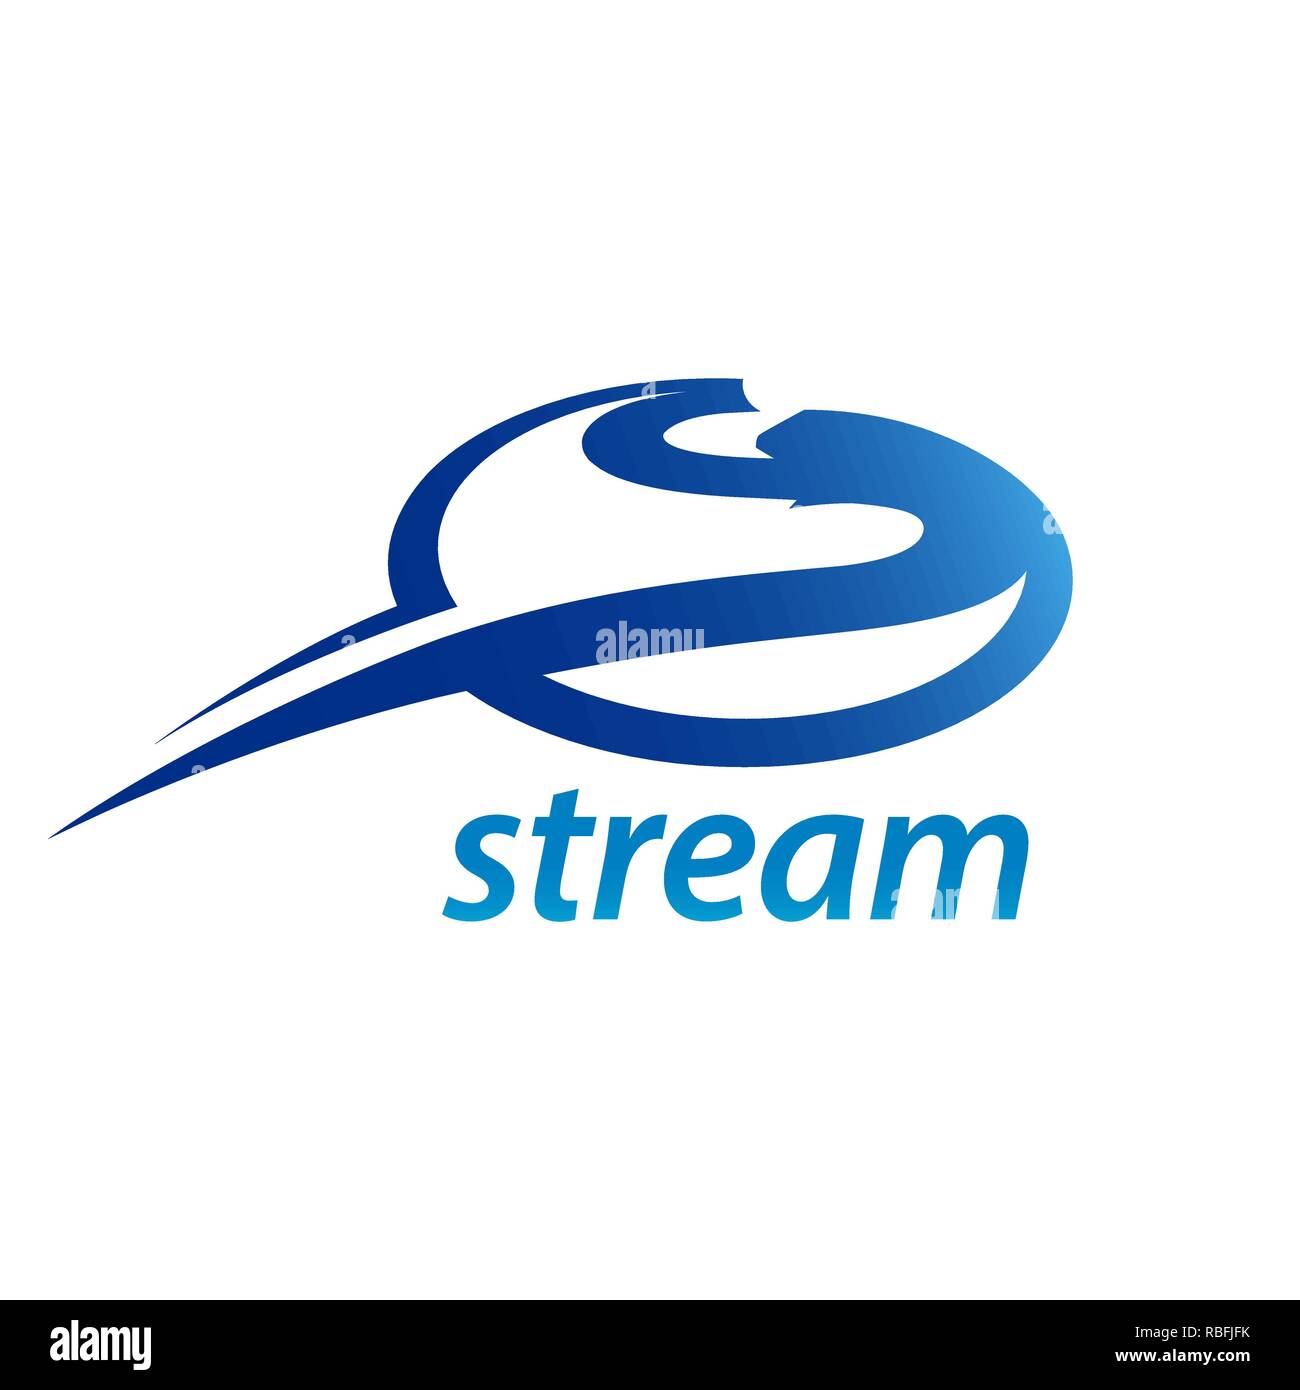 Stream Kreis Anfangsbuchstabe S logo Konzept Design vorlage Idee Stock Vektor